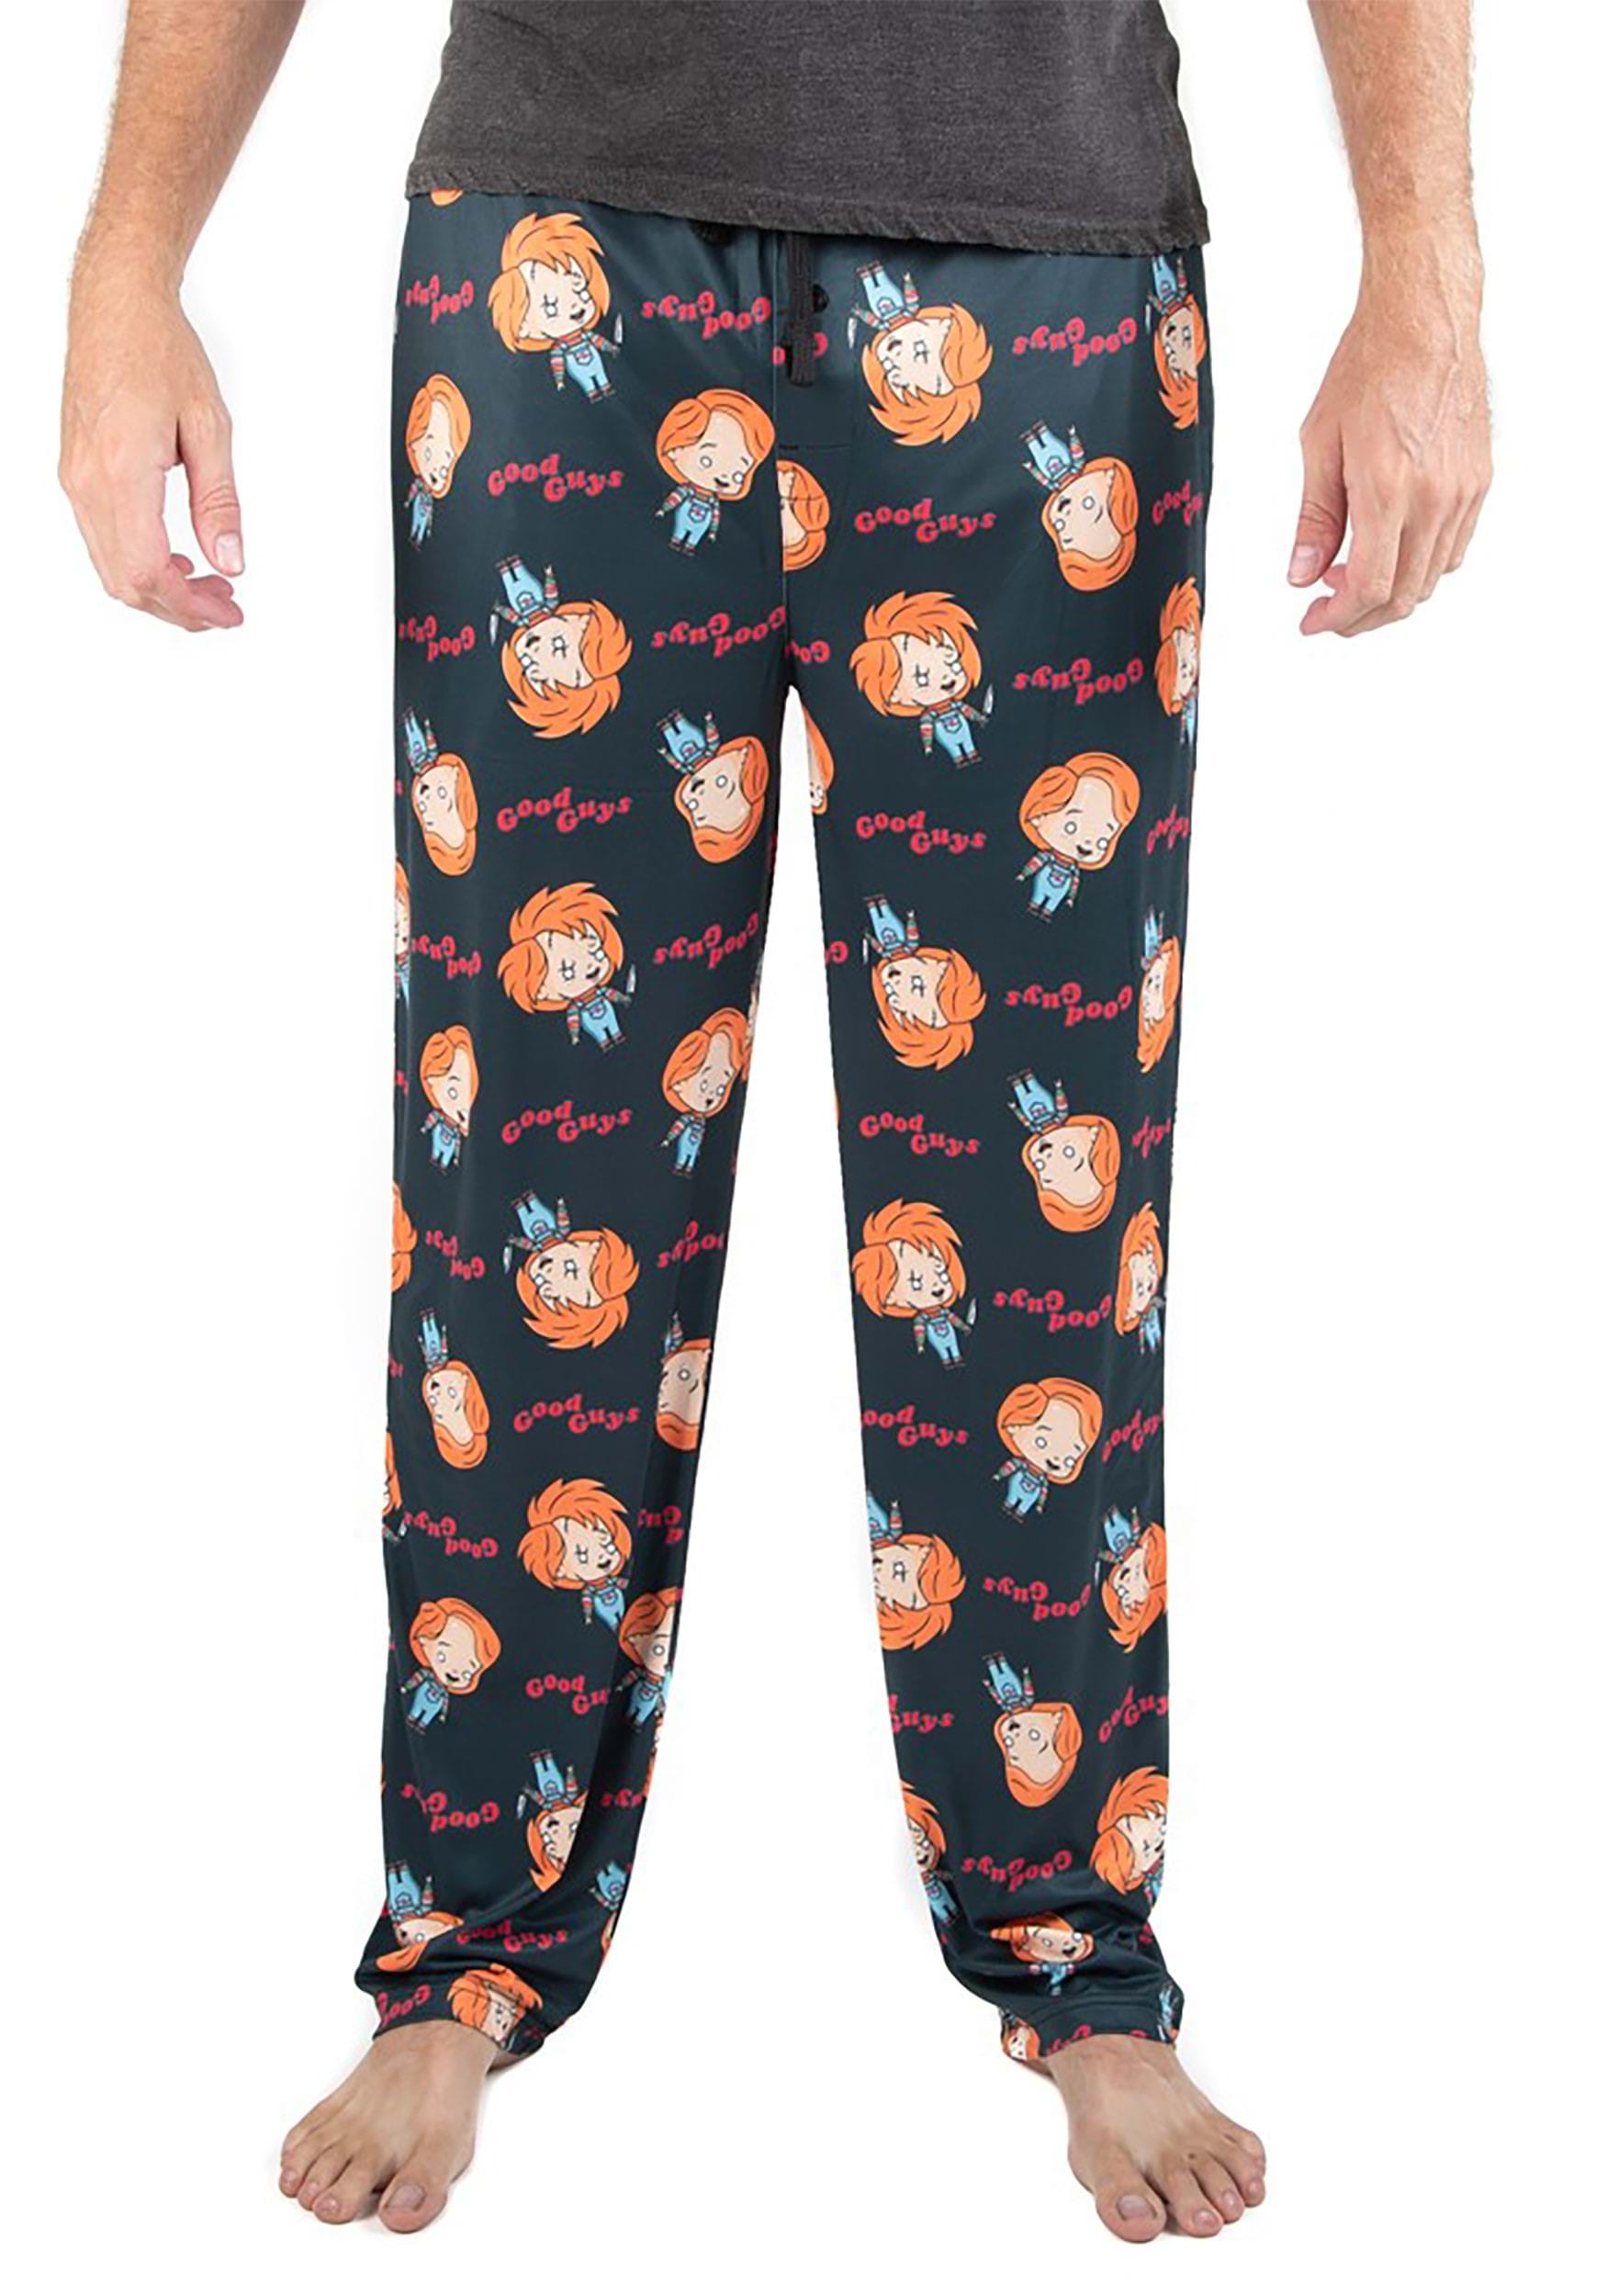 Sleep Pants Chucky All Over Print Sleep Pants